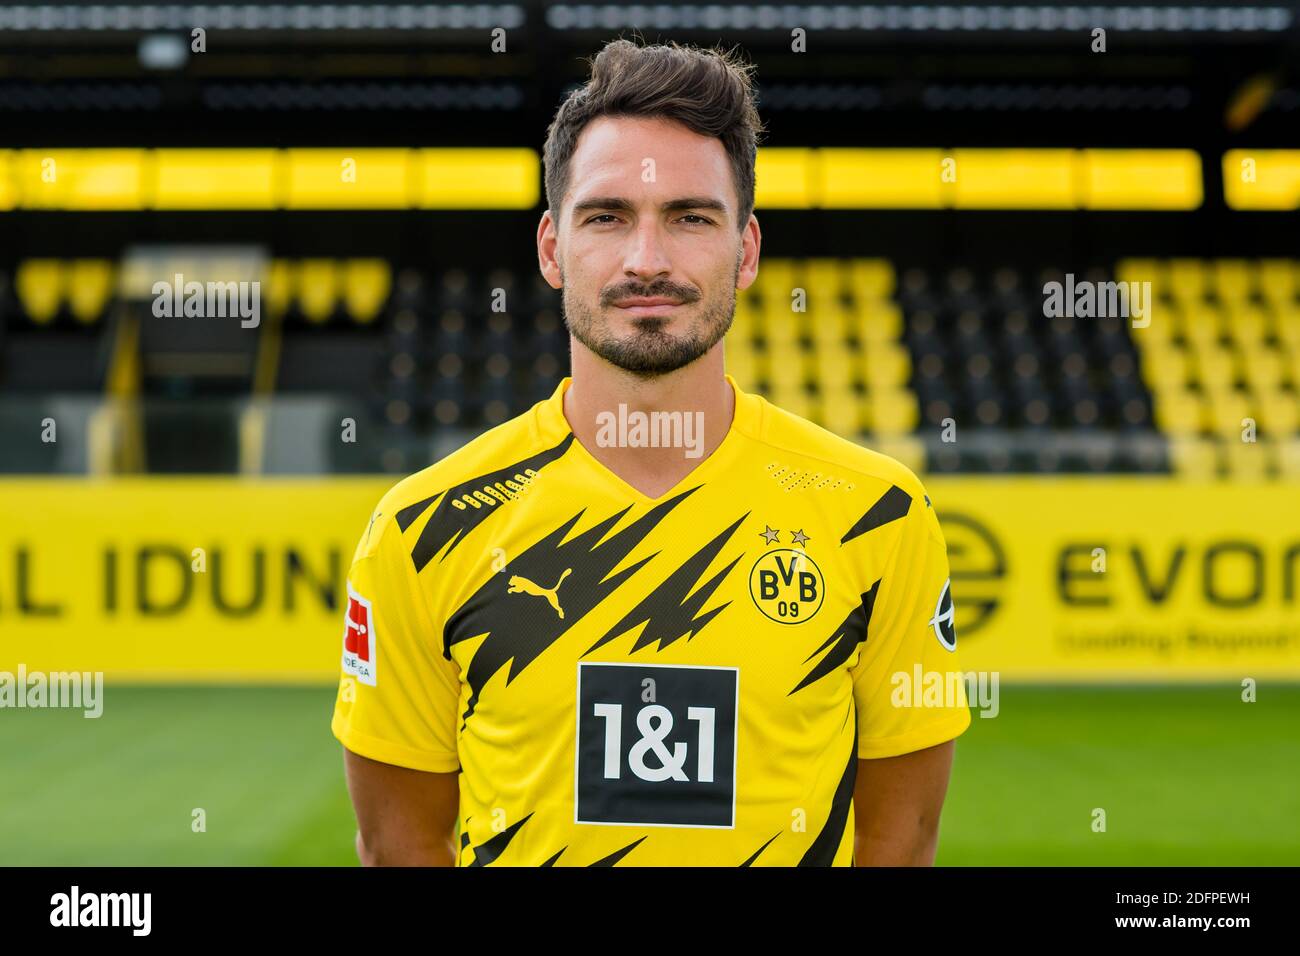 Presentazione della squadra Borussia Dortmund (BVB), Bundesliga tedesca, stagione 2020/21- Mats Hummels Foto Stock